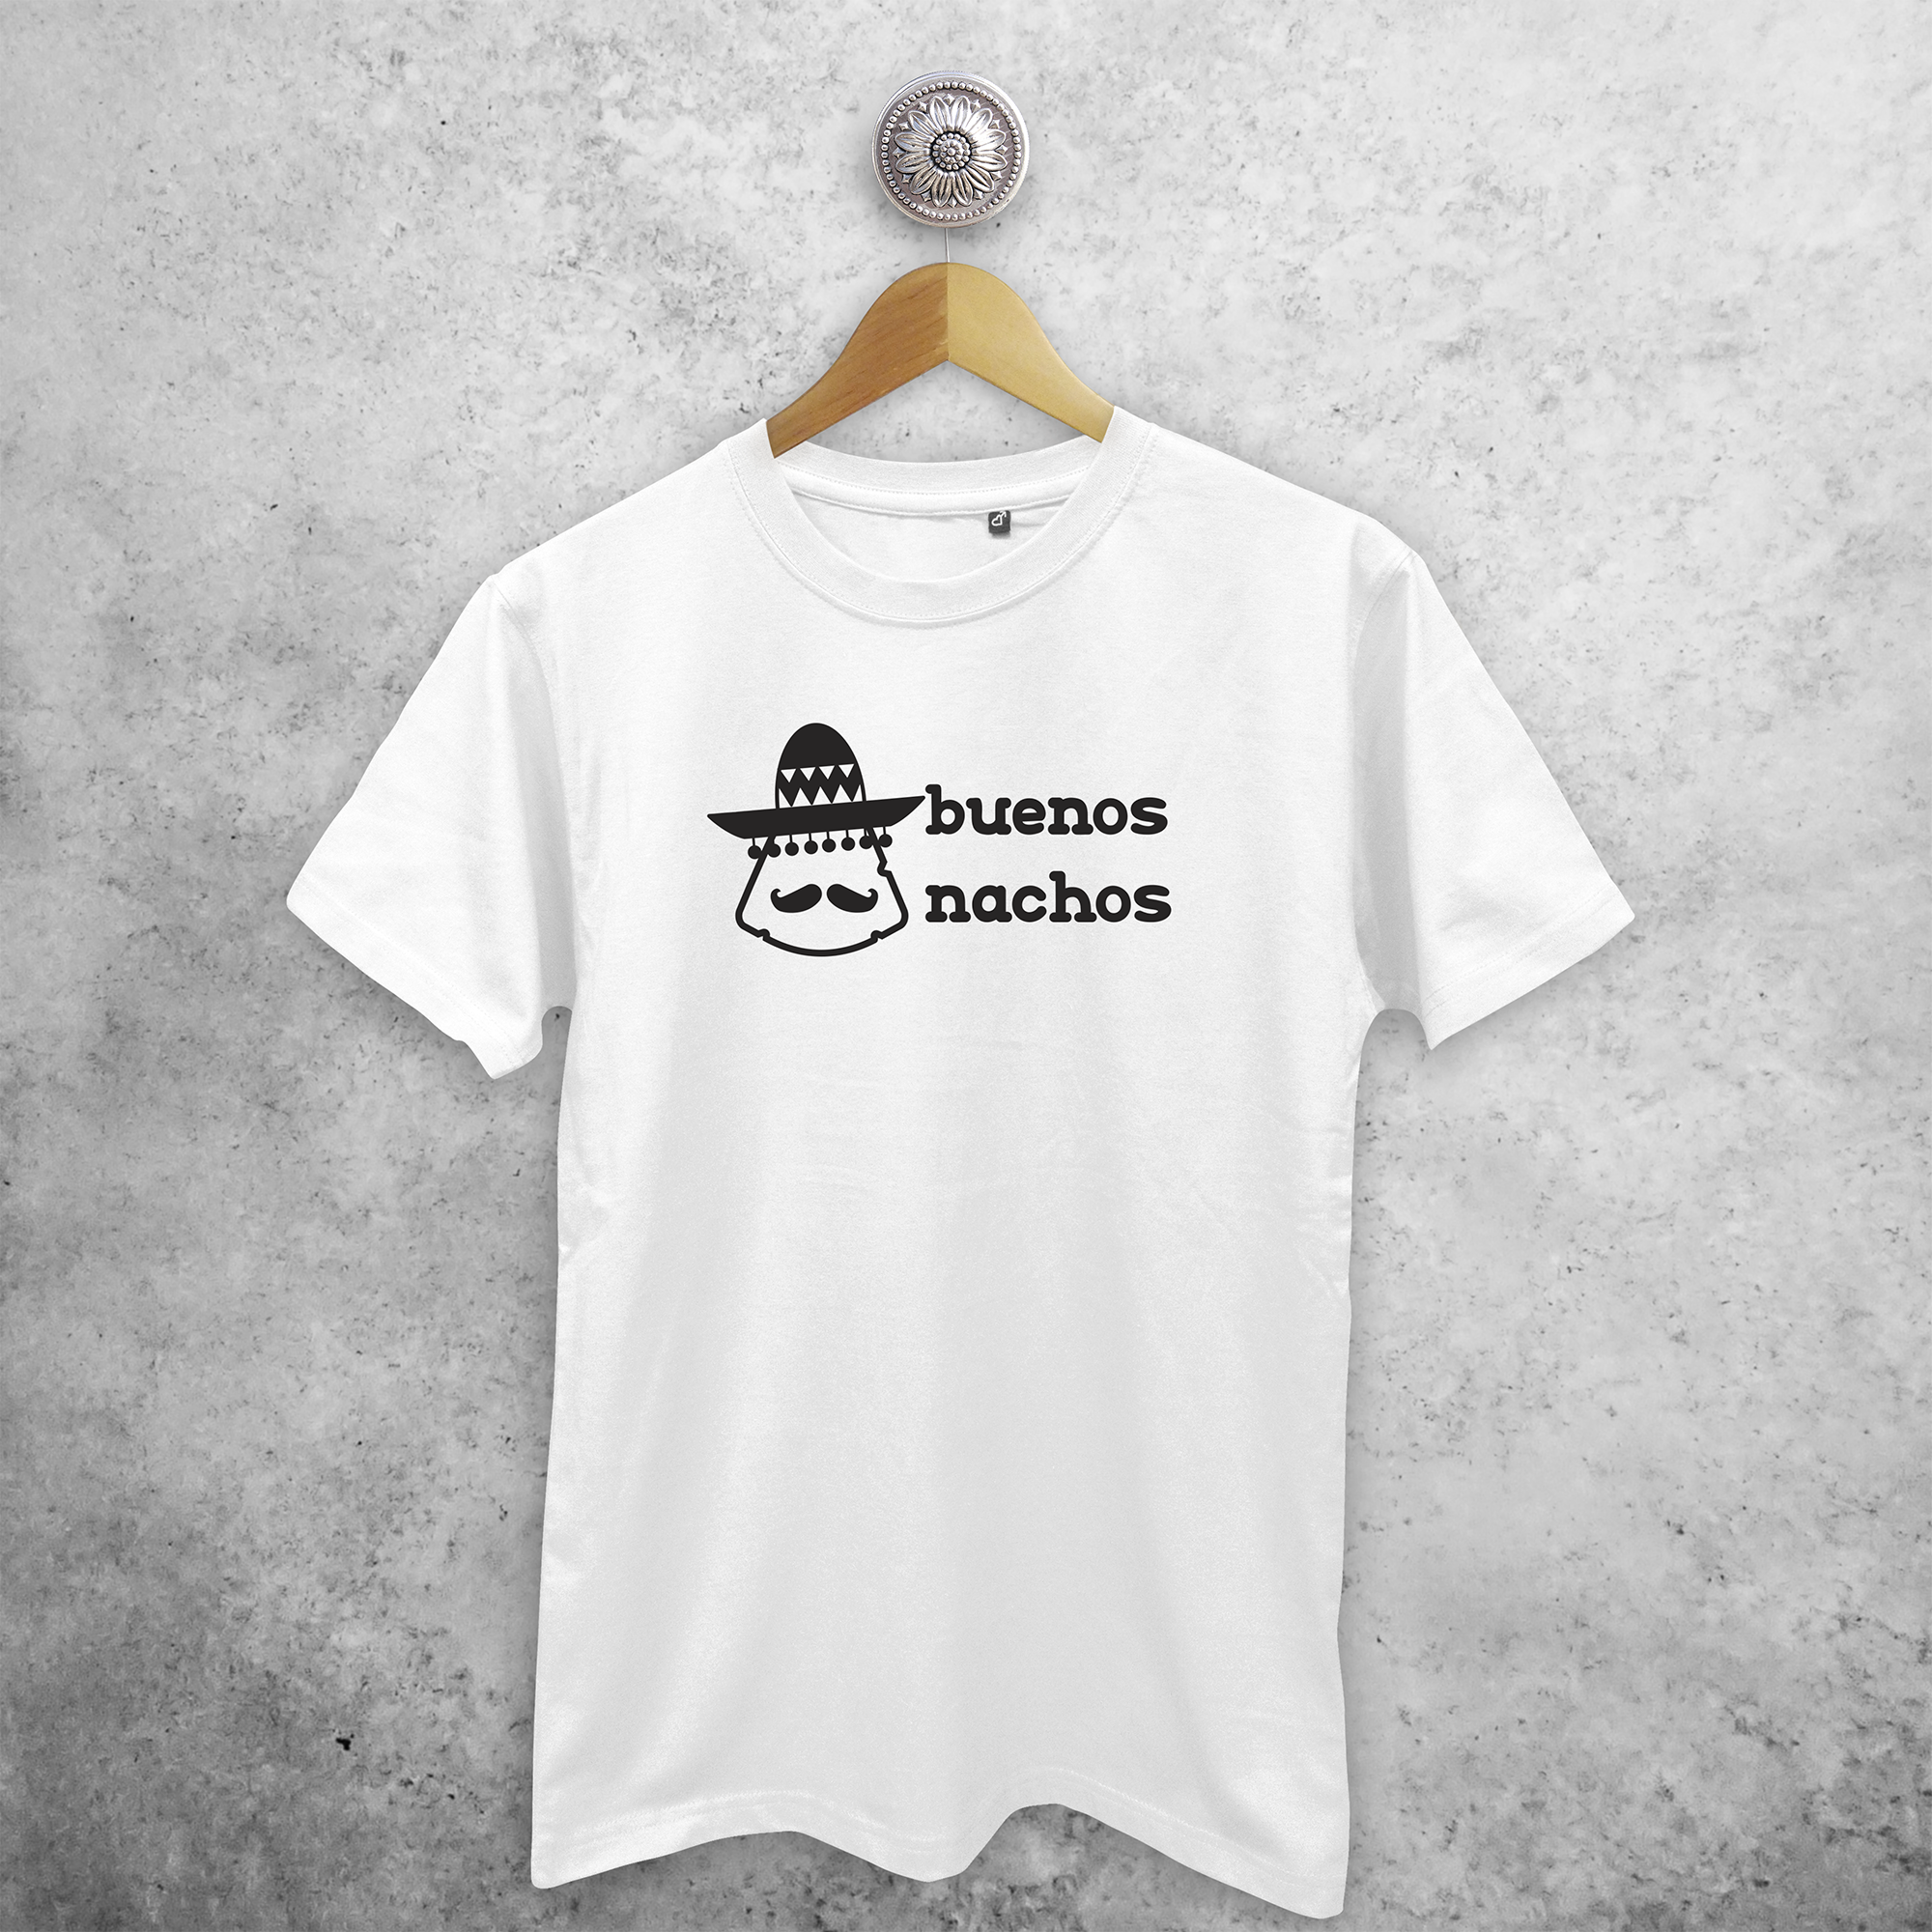 'Buenos nachos' volwassene shirt